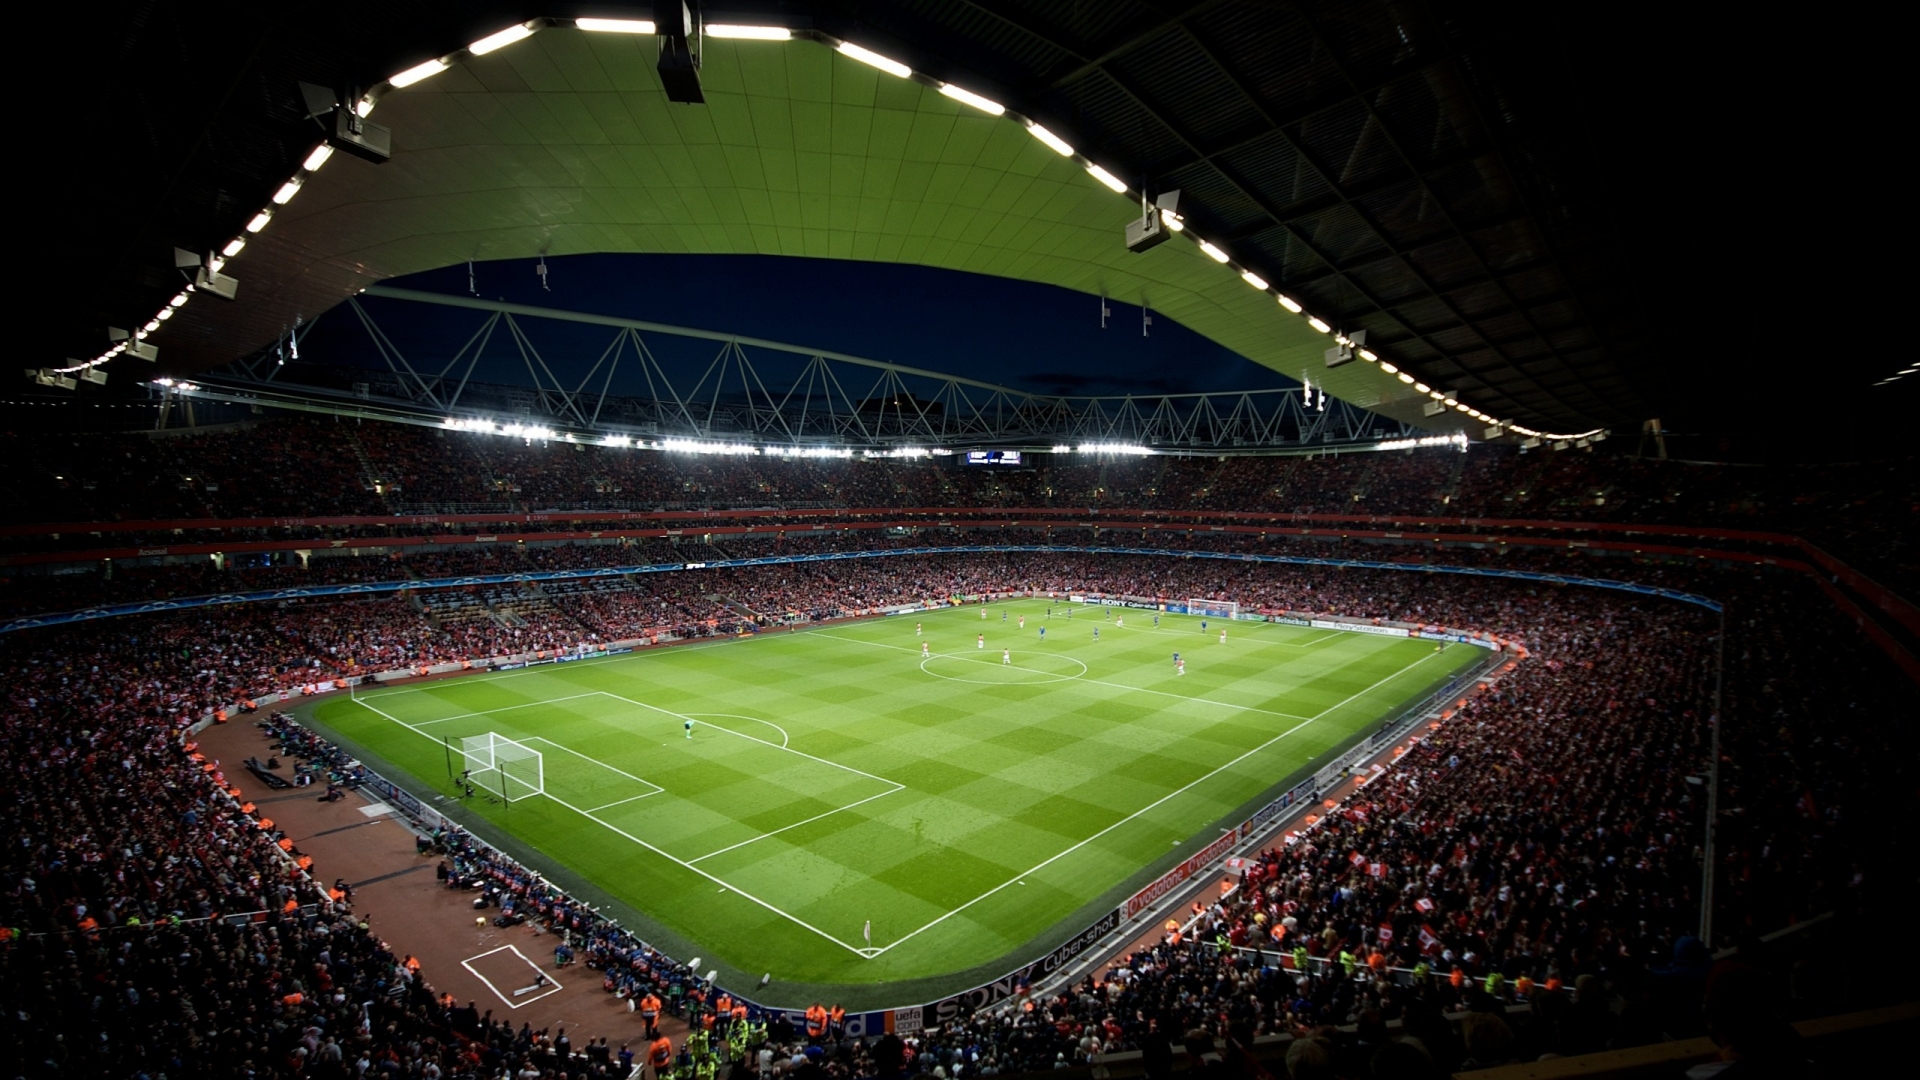 Stadium in Emirates for 1920 x 1080 HDTV 1080p resolution